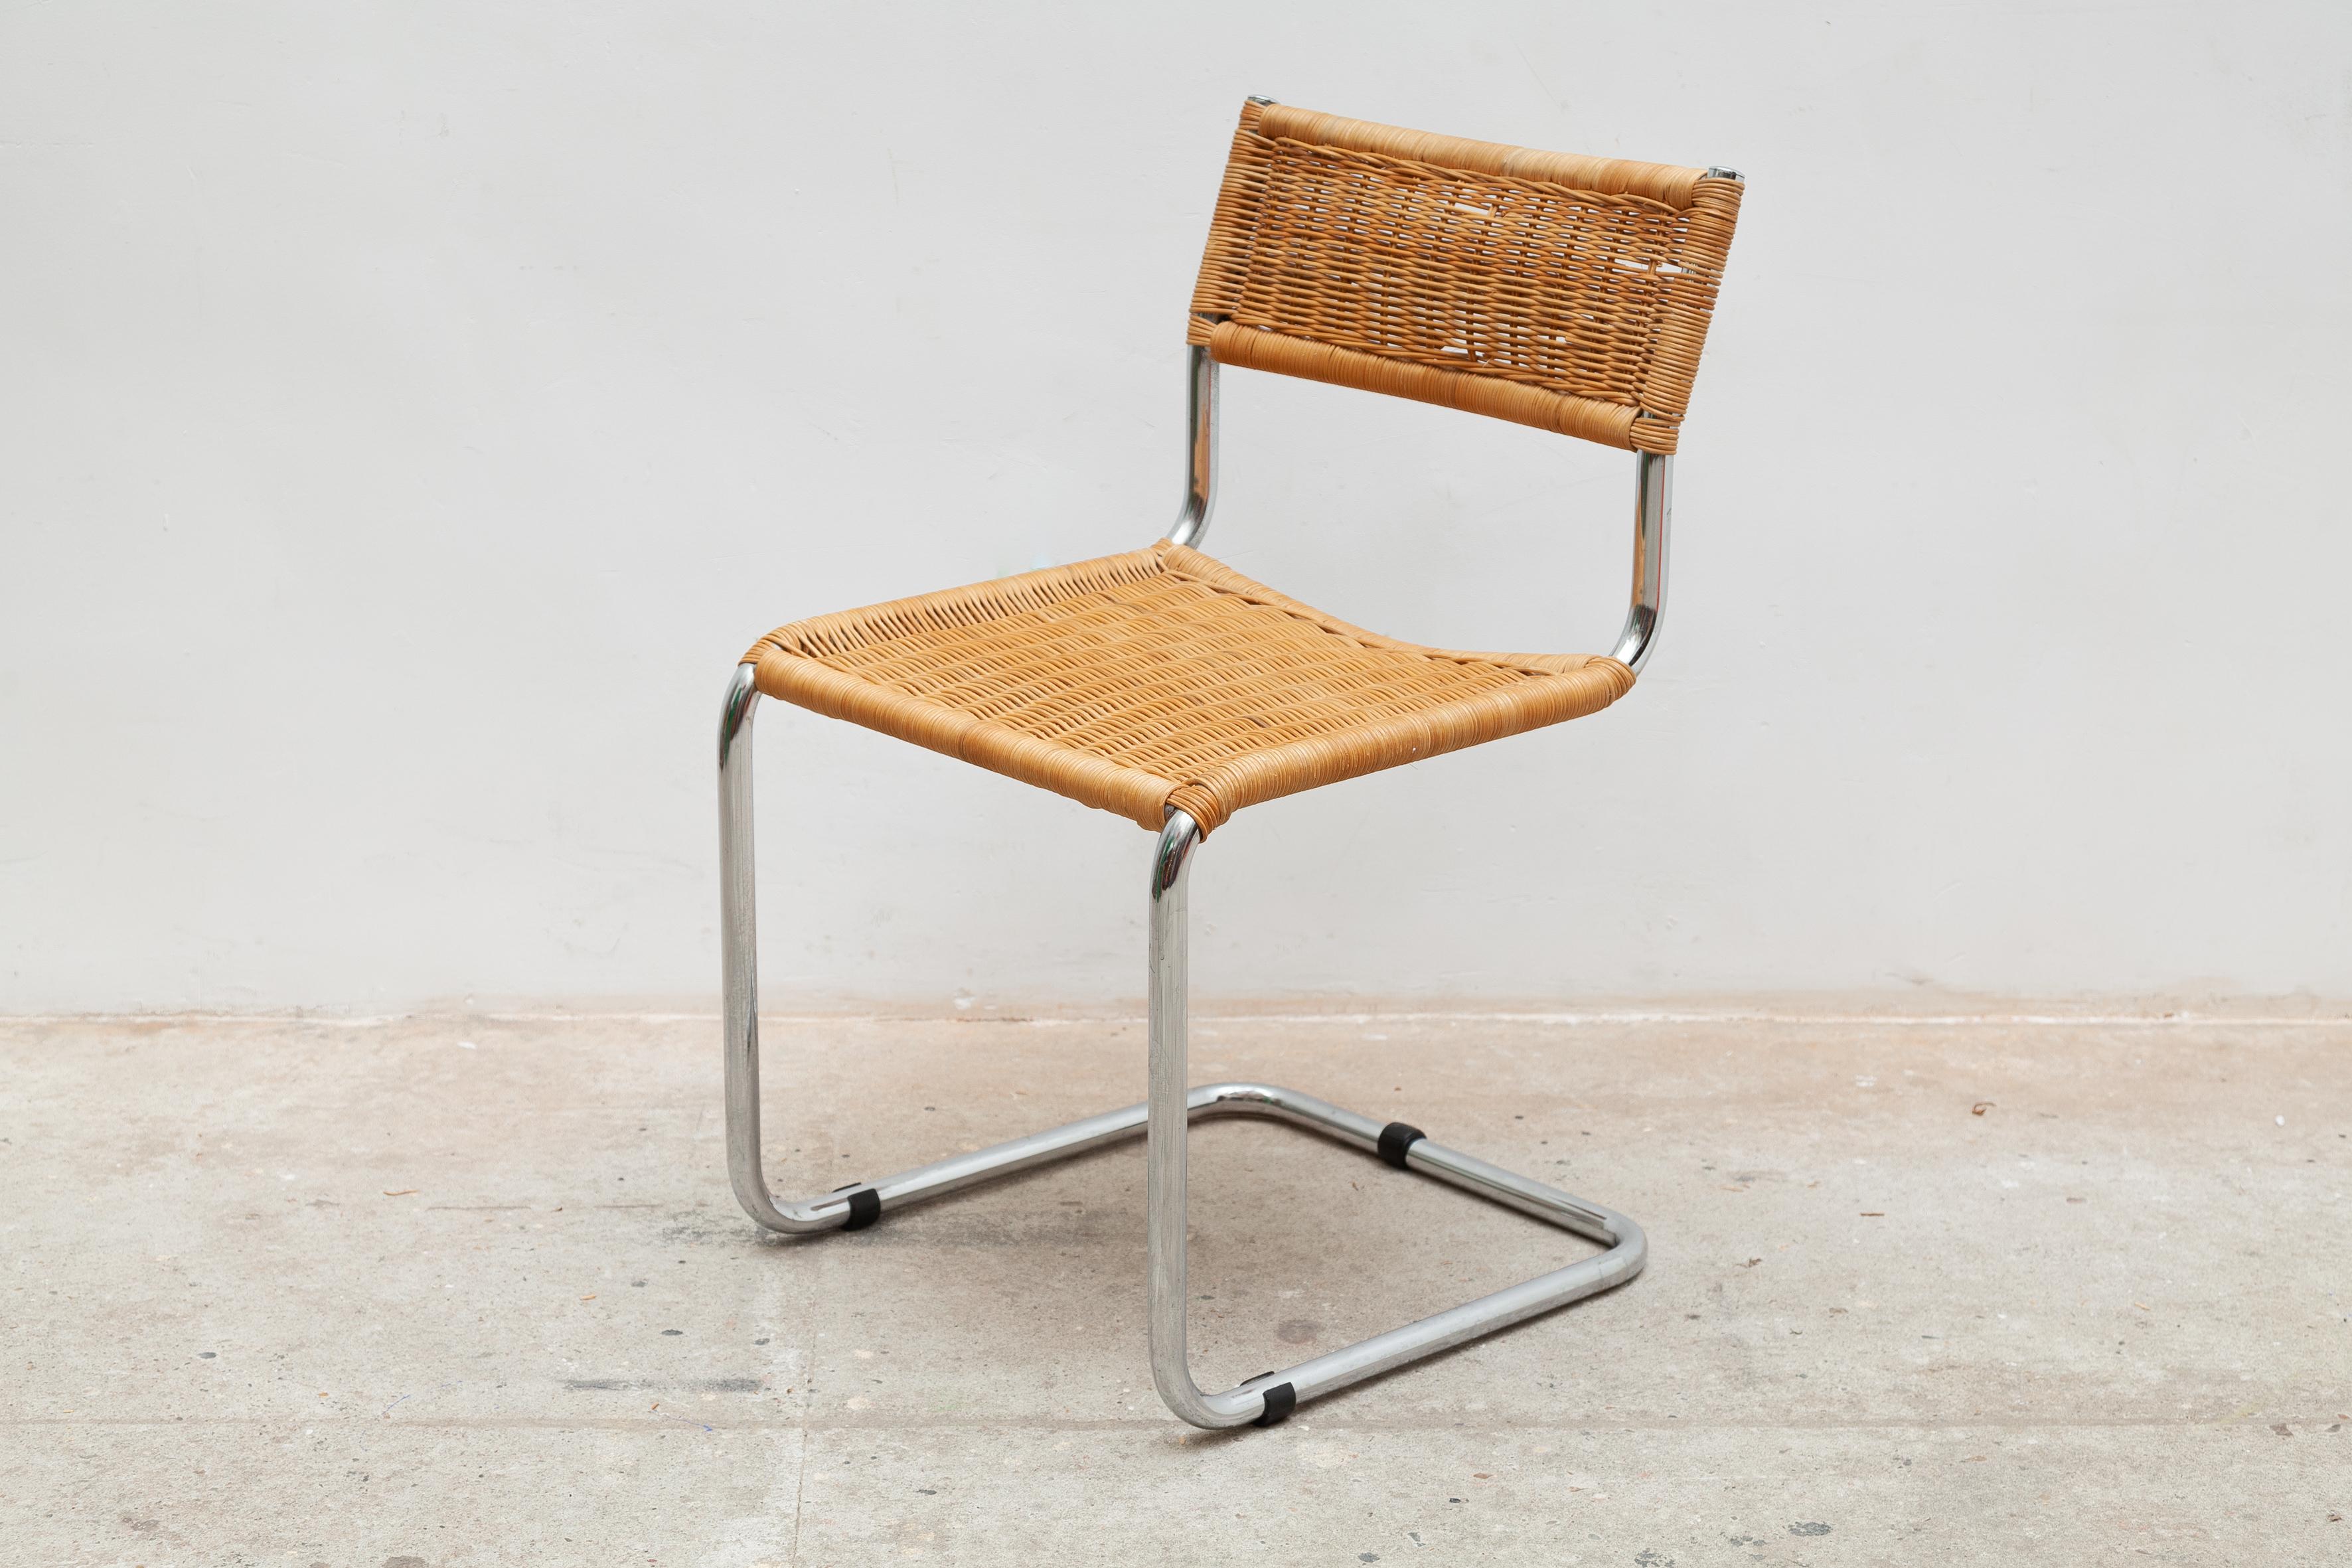 Dieses Stuhlpaar wurde in den 60er Jahren hergestellt. Er besteht aus einem verchromten Rohrgestell mit freitragender Basis, Sitz und Rückenlehne sind aus geflochtenem Rattan.
Ein schöner Klassiker, der an das Modell Cesca B32 des ungarischen